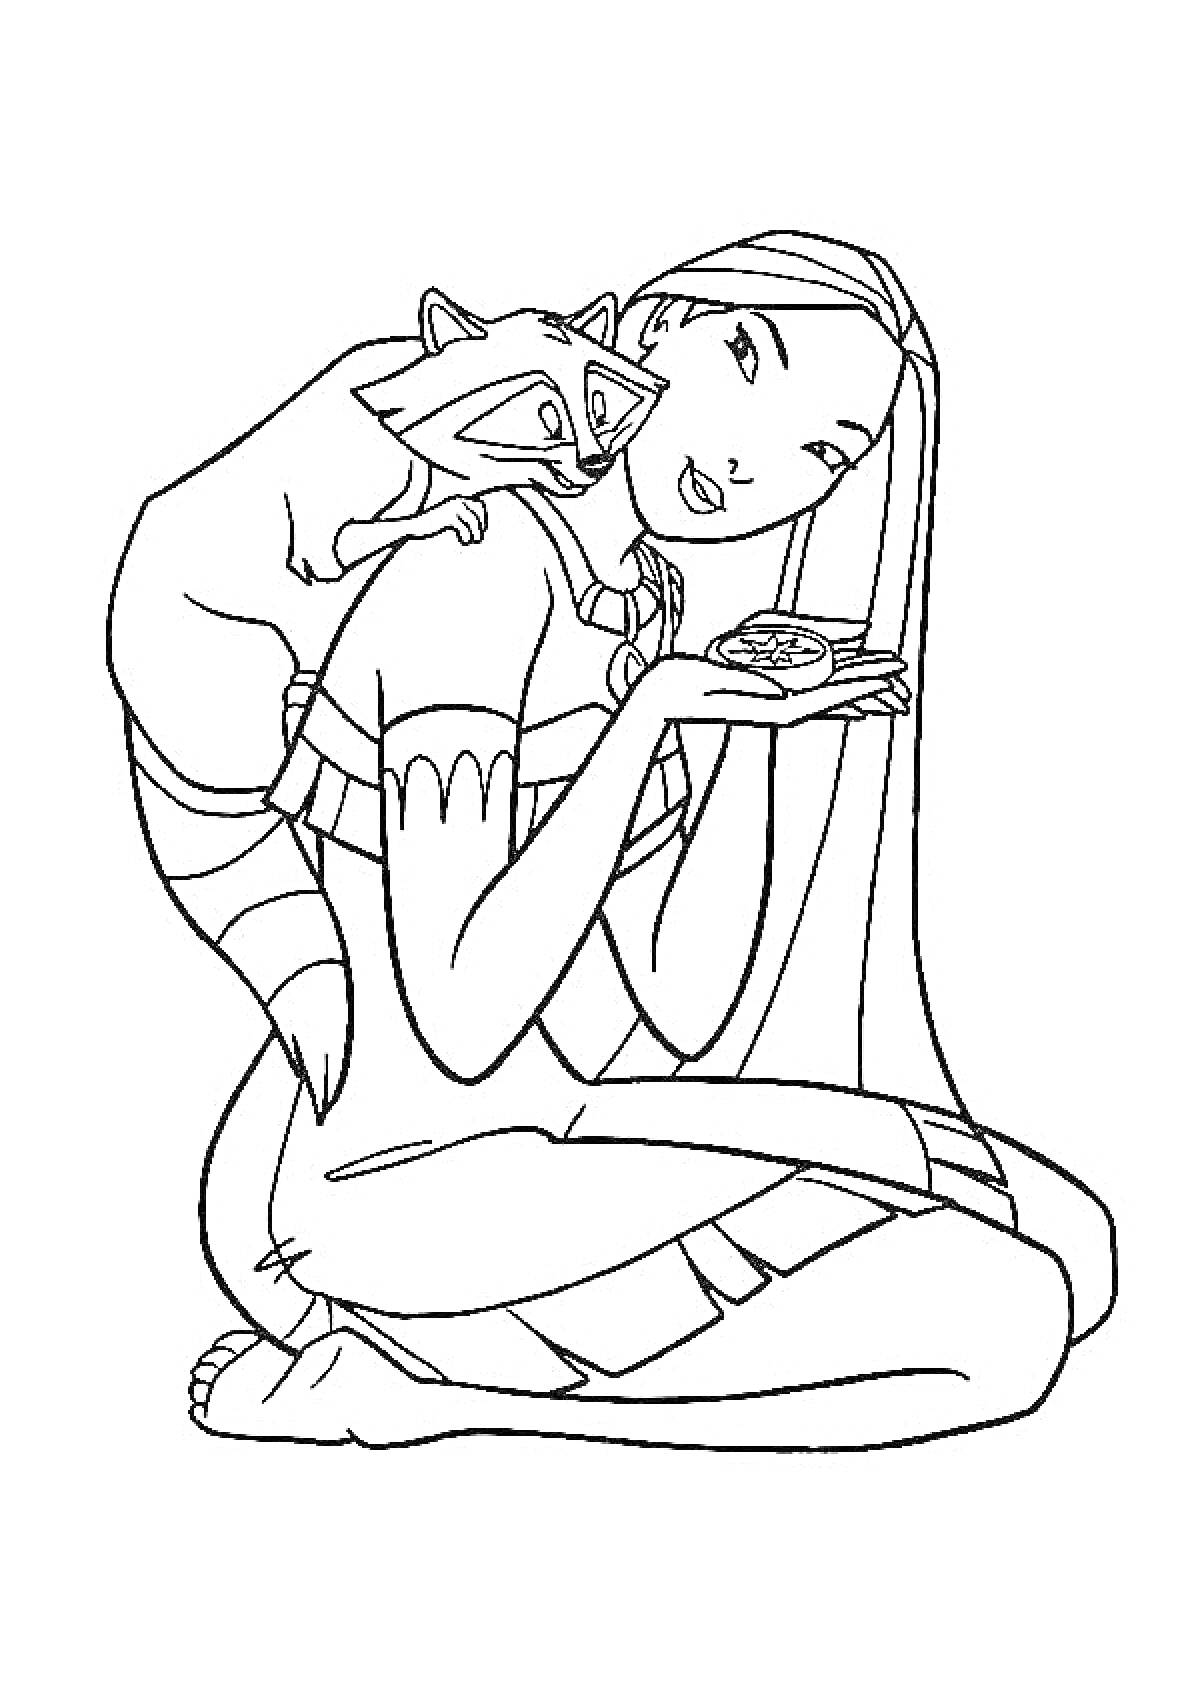 Девушка из Дисней с длинными волосами и енотом на плече, держащая что-то в руках